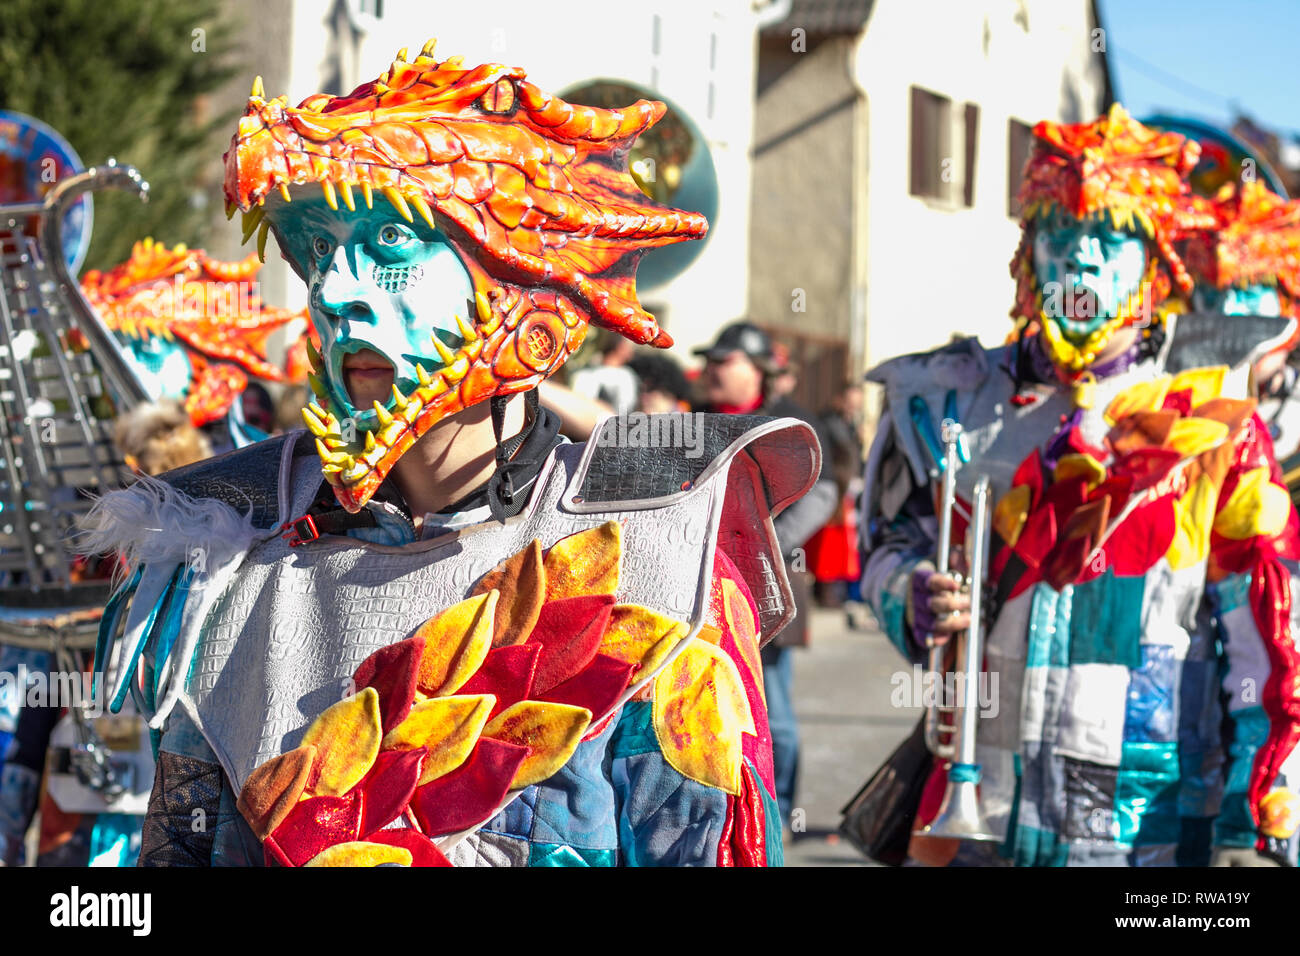 Guggenmusik-Kapelle bei einem Festumzug zur schwäbisch-alemannischen Fasnet in Schwaben mit traditionellen Kostümen und Holzmasken Foto Stock